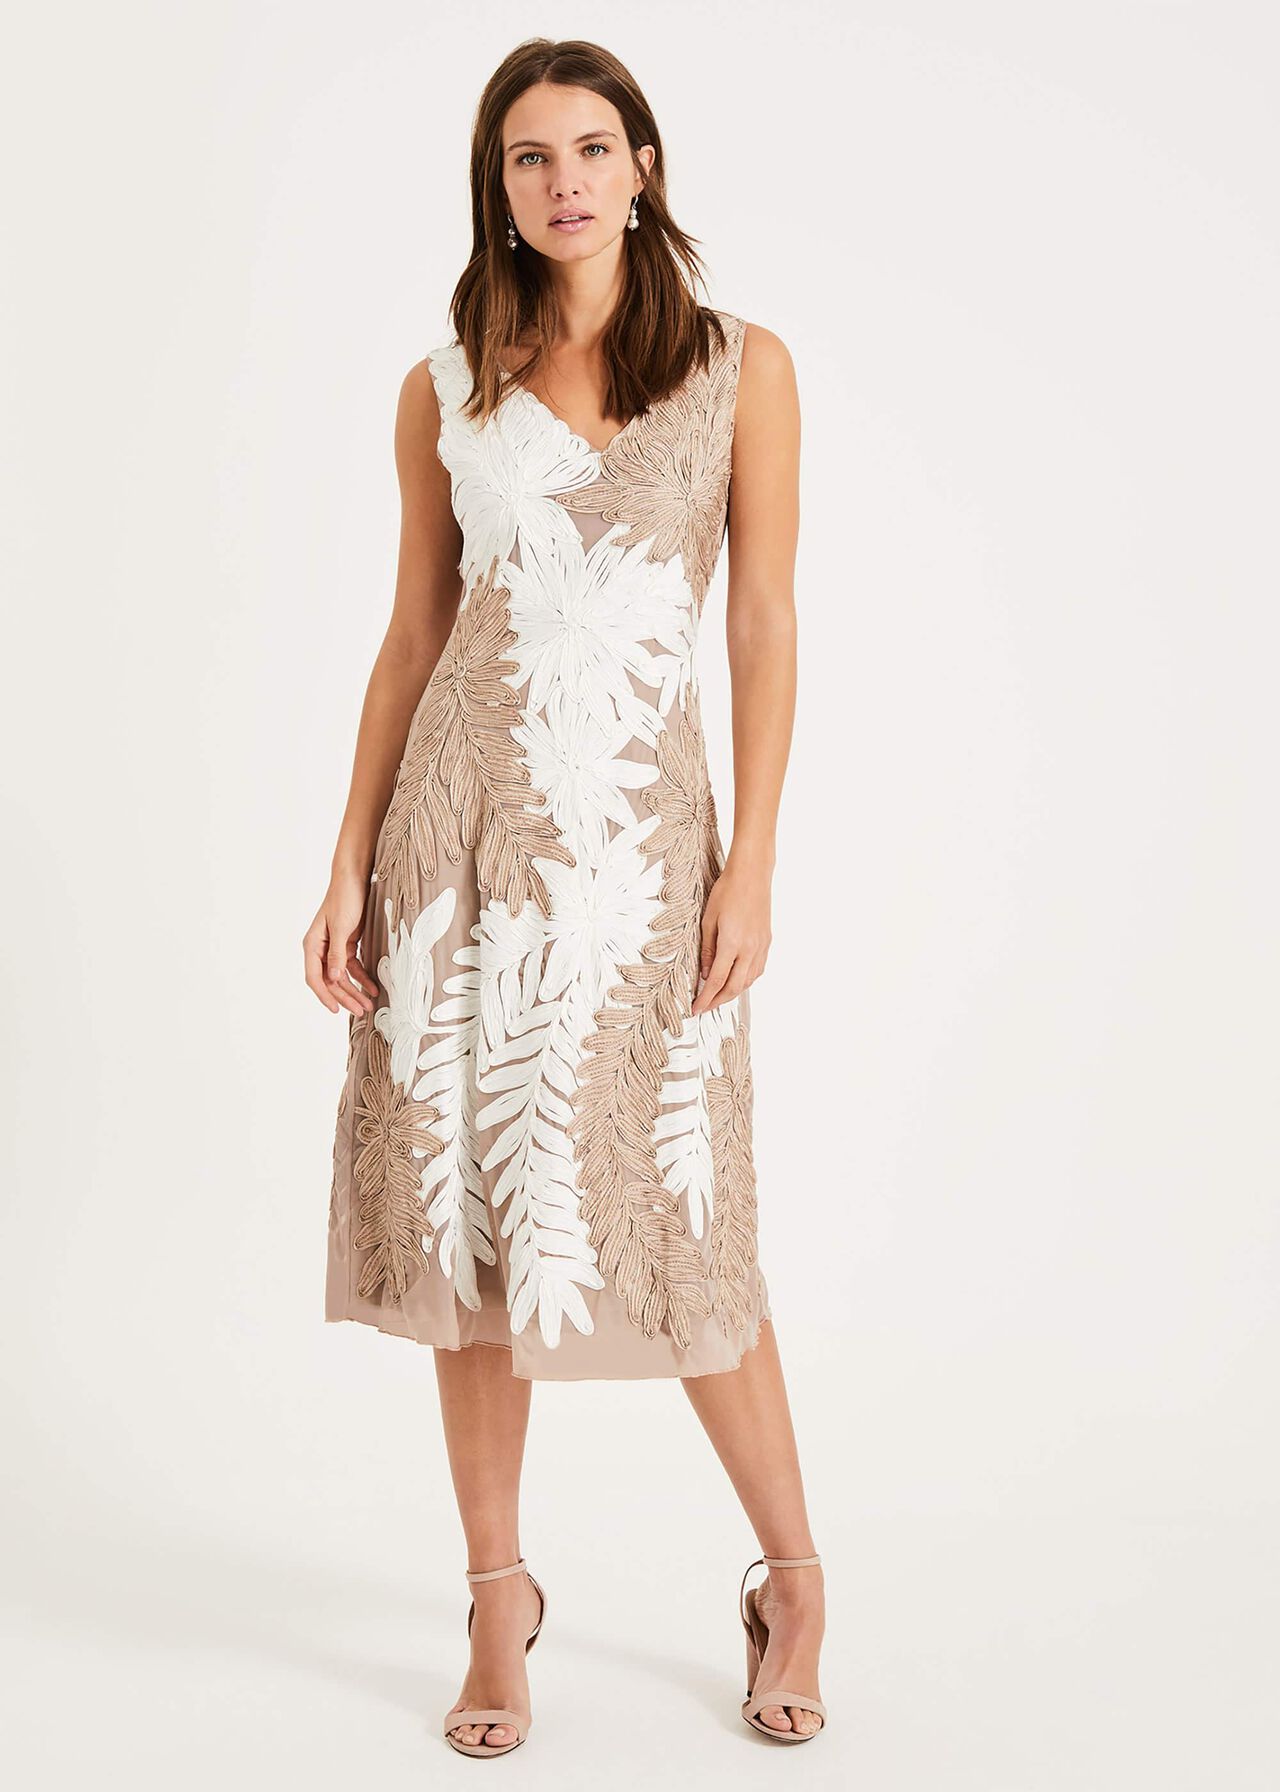 Denise Tapework Lace Dress